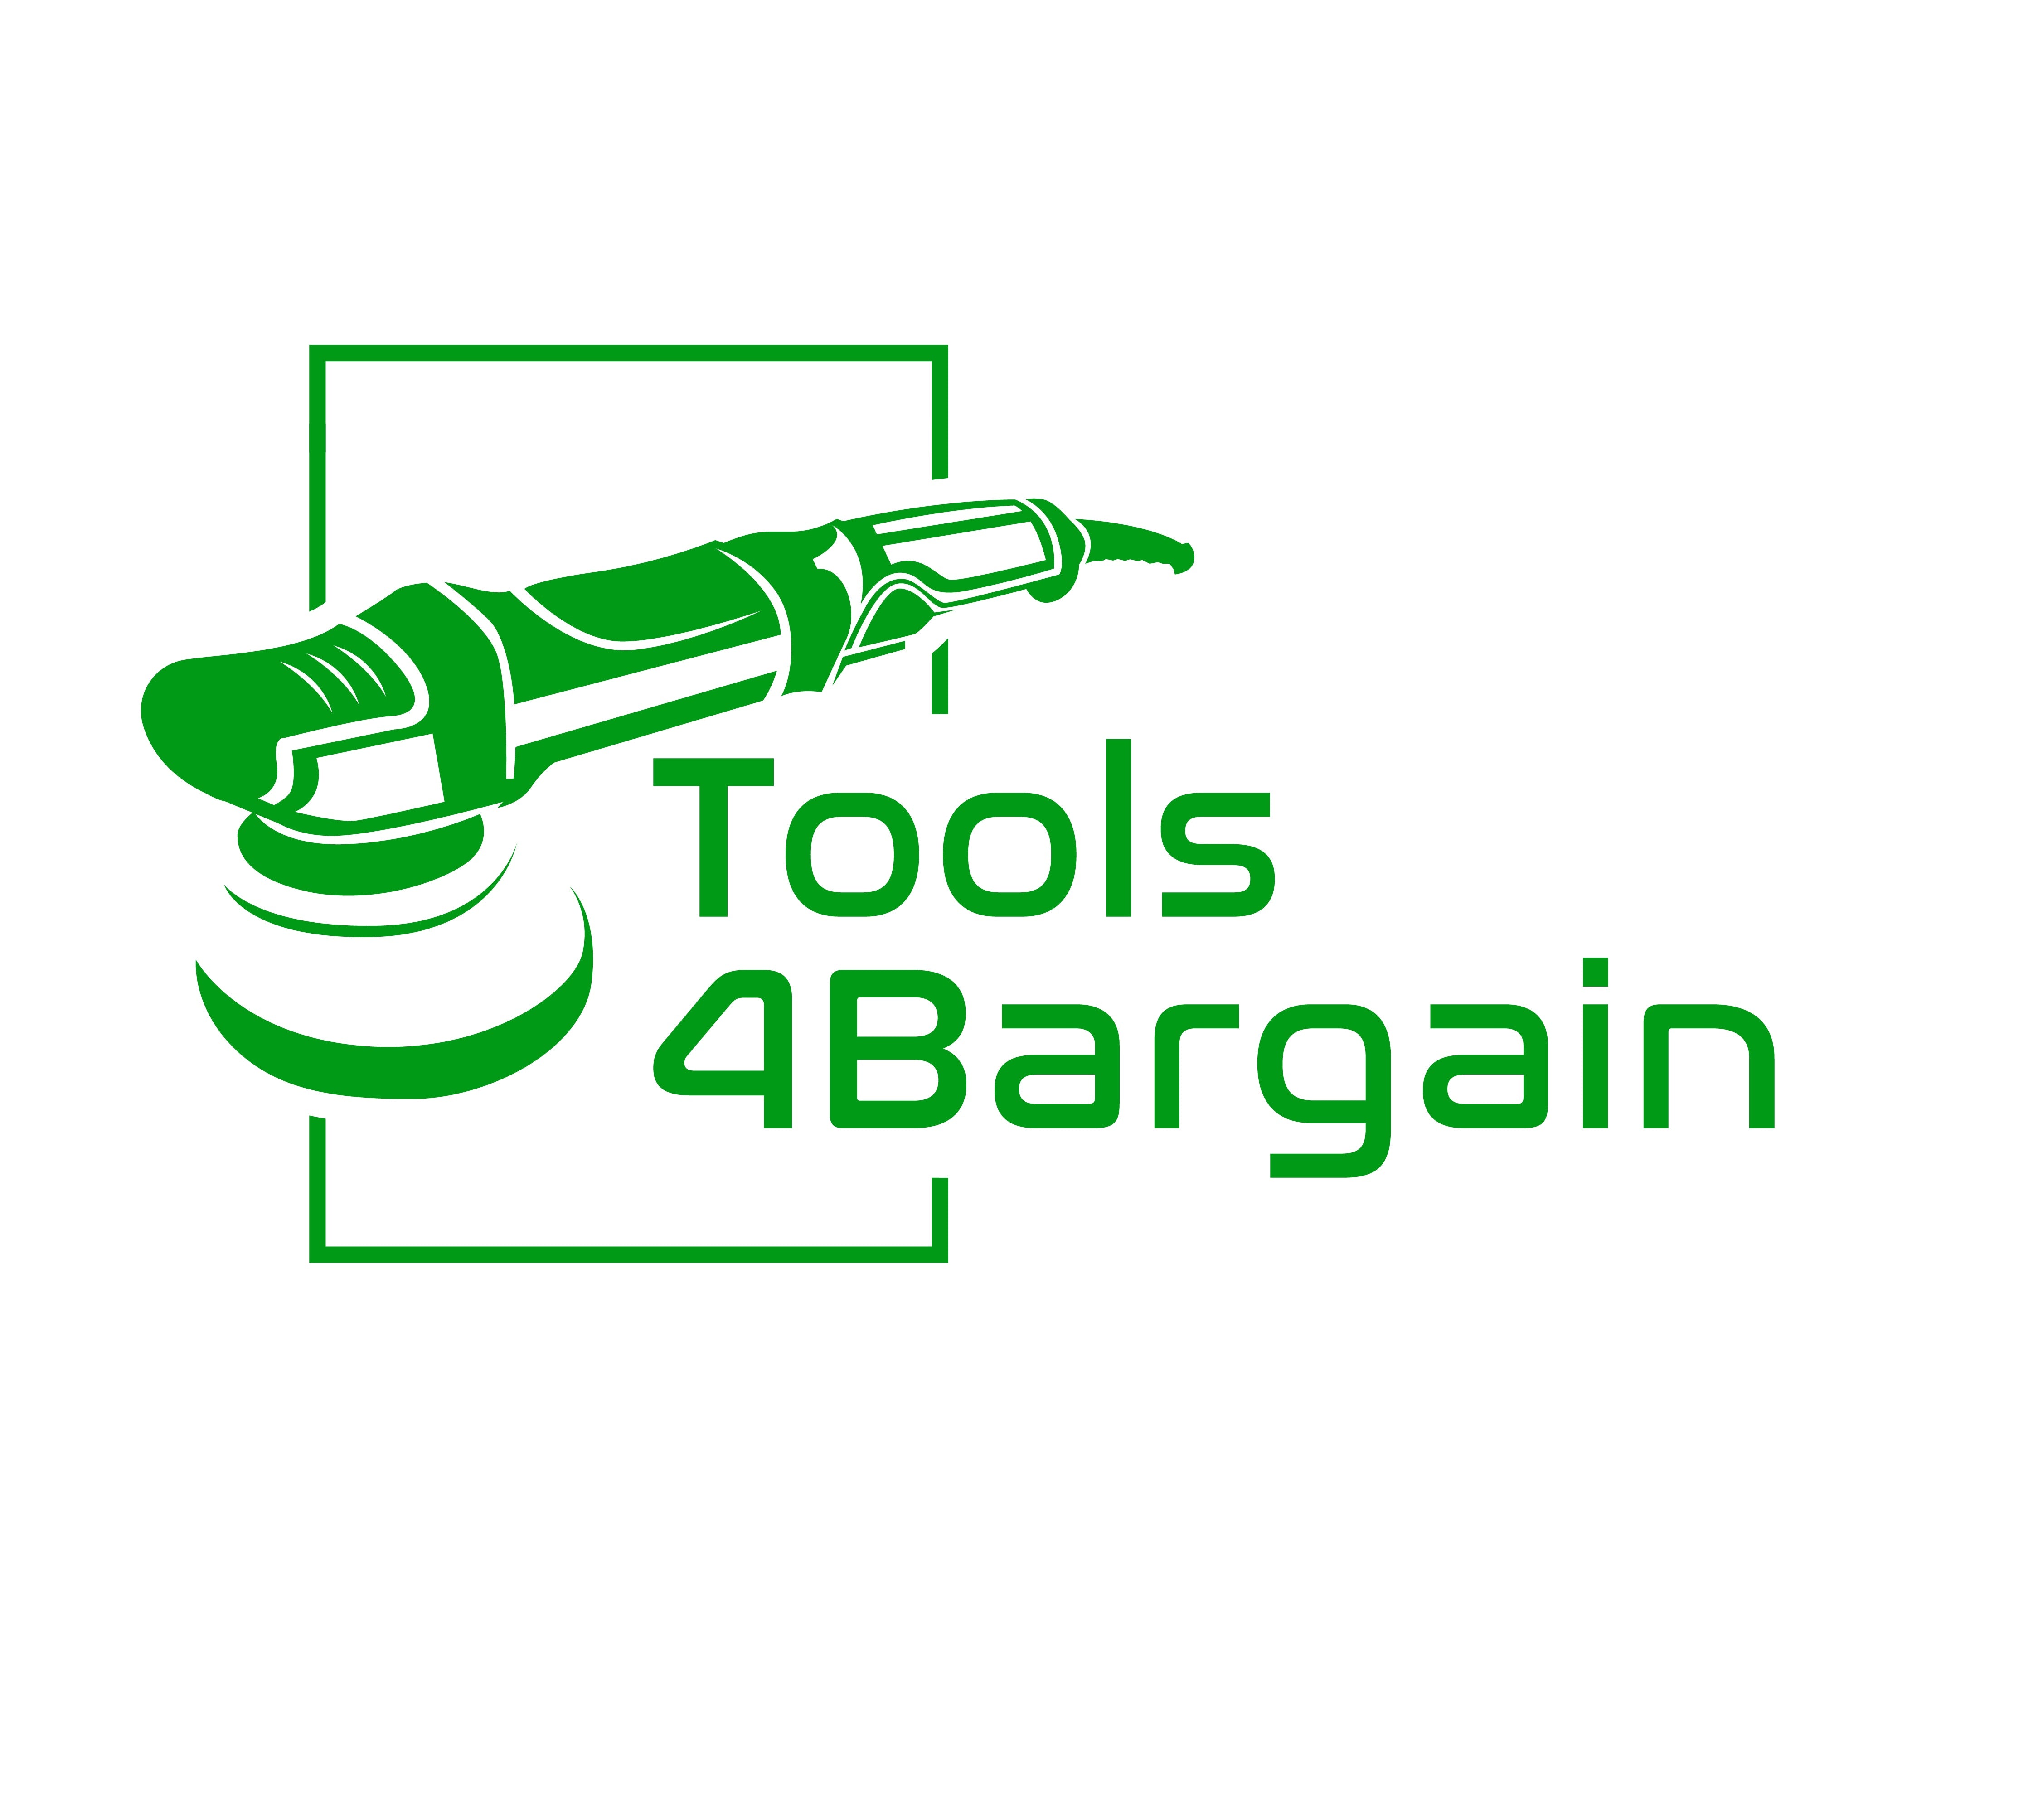 Tools 4 Bargain